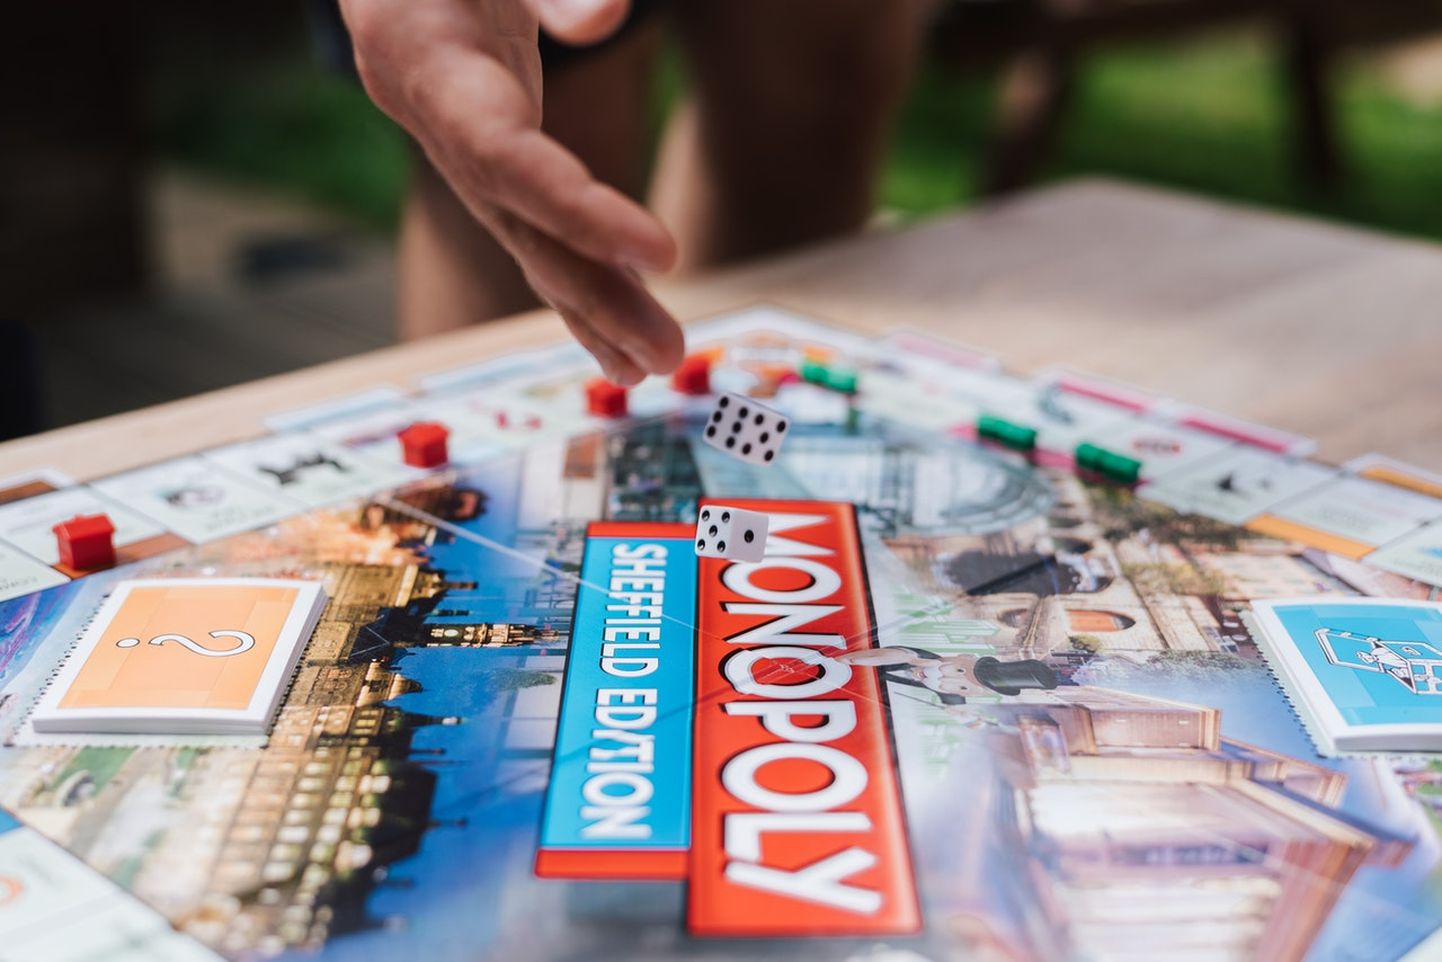 Игра "Монополия" была изобретена в США в 1930-х годах в период Великой депрессии.